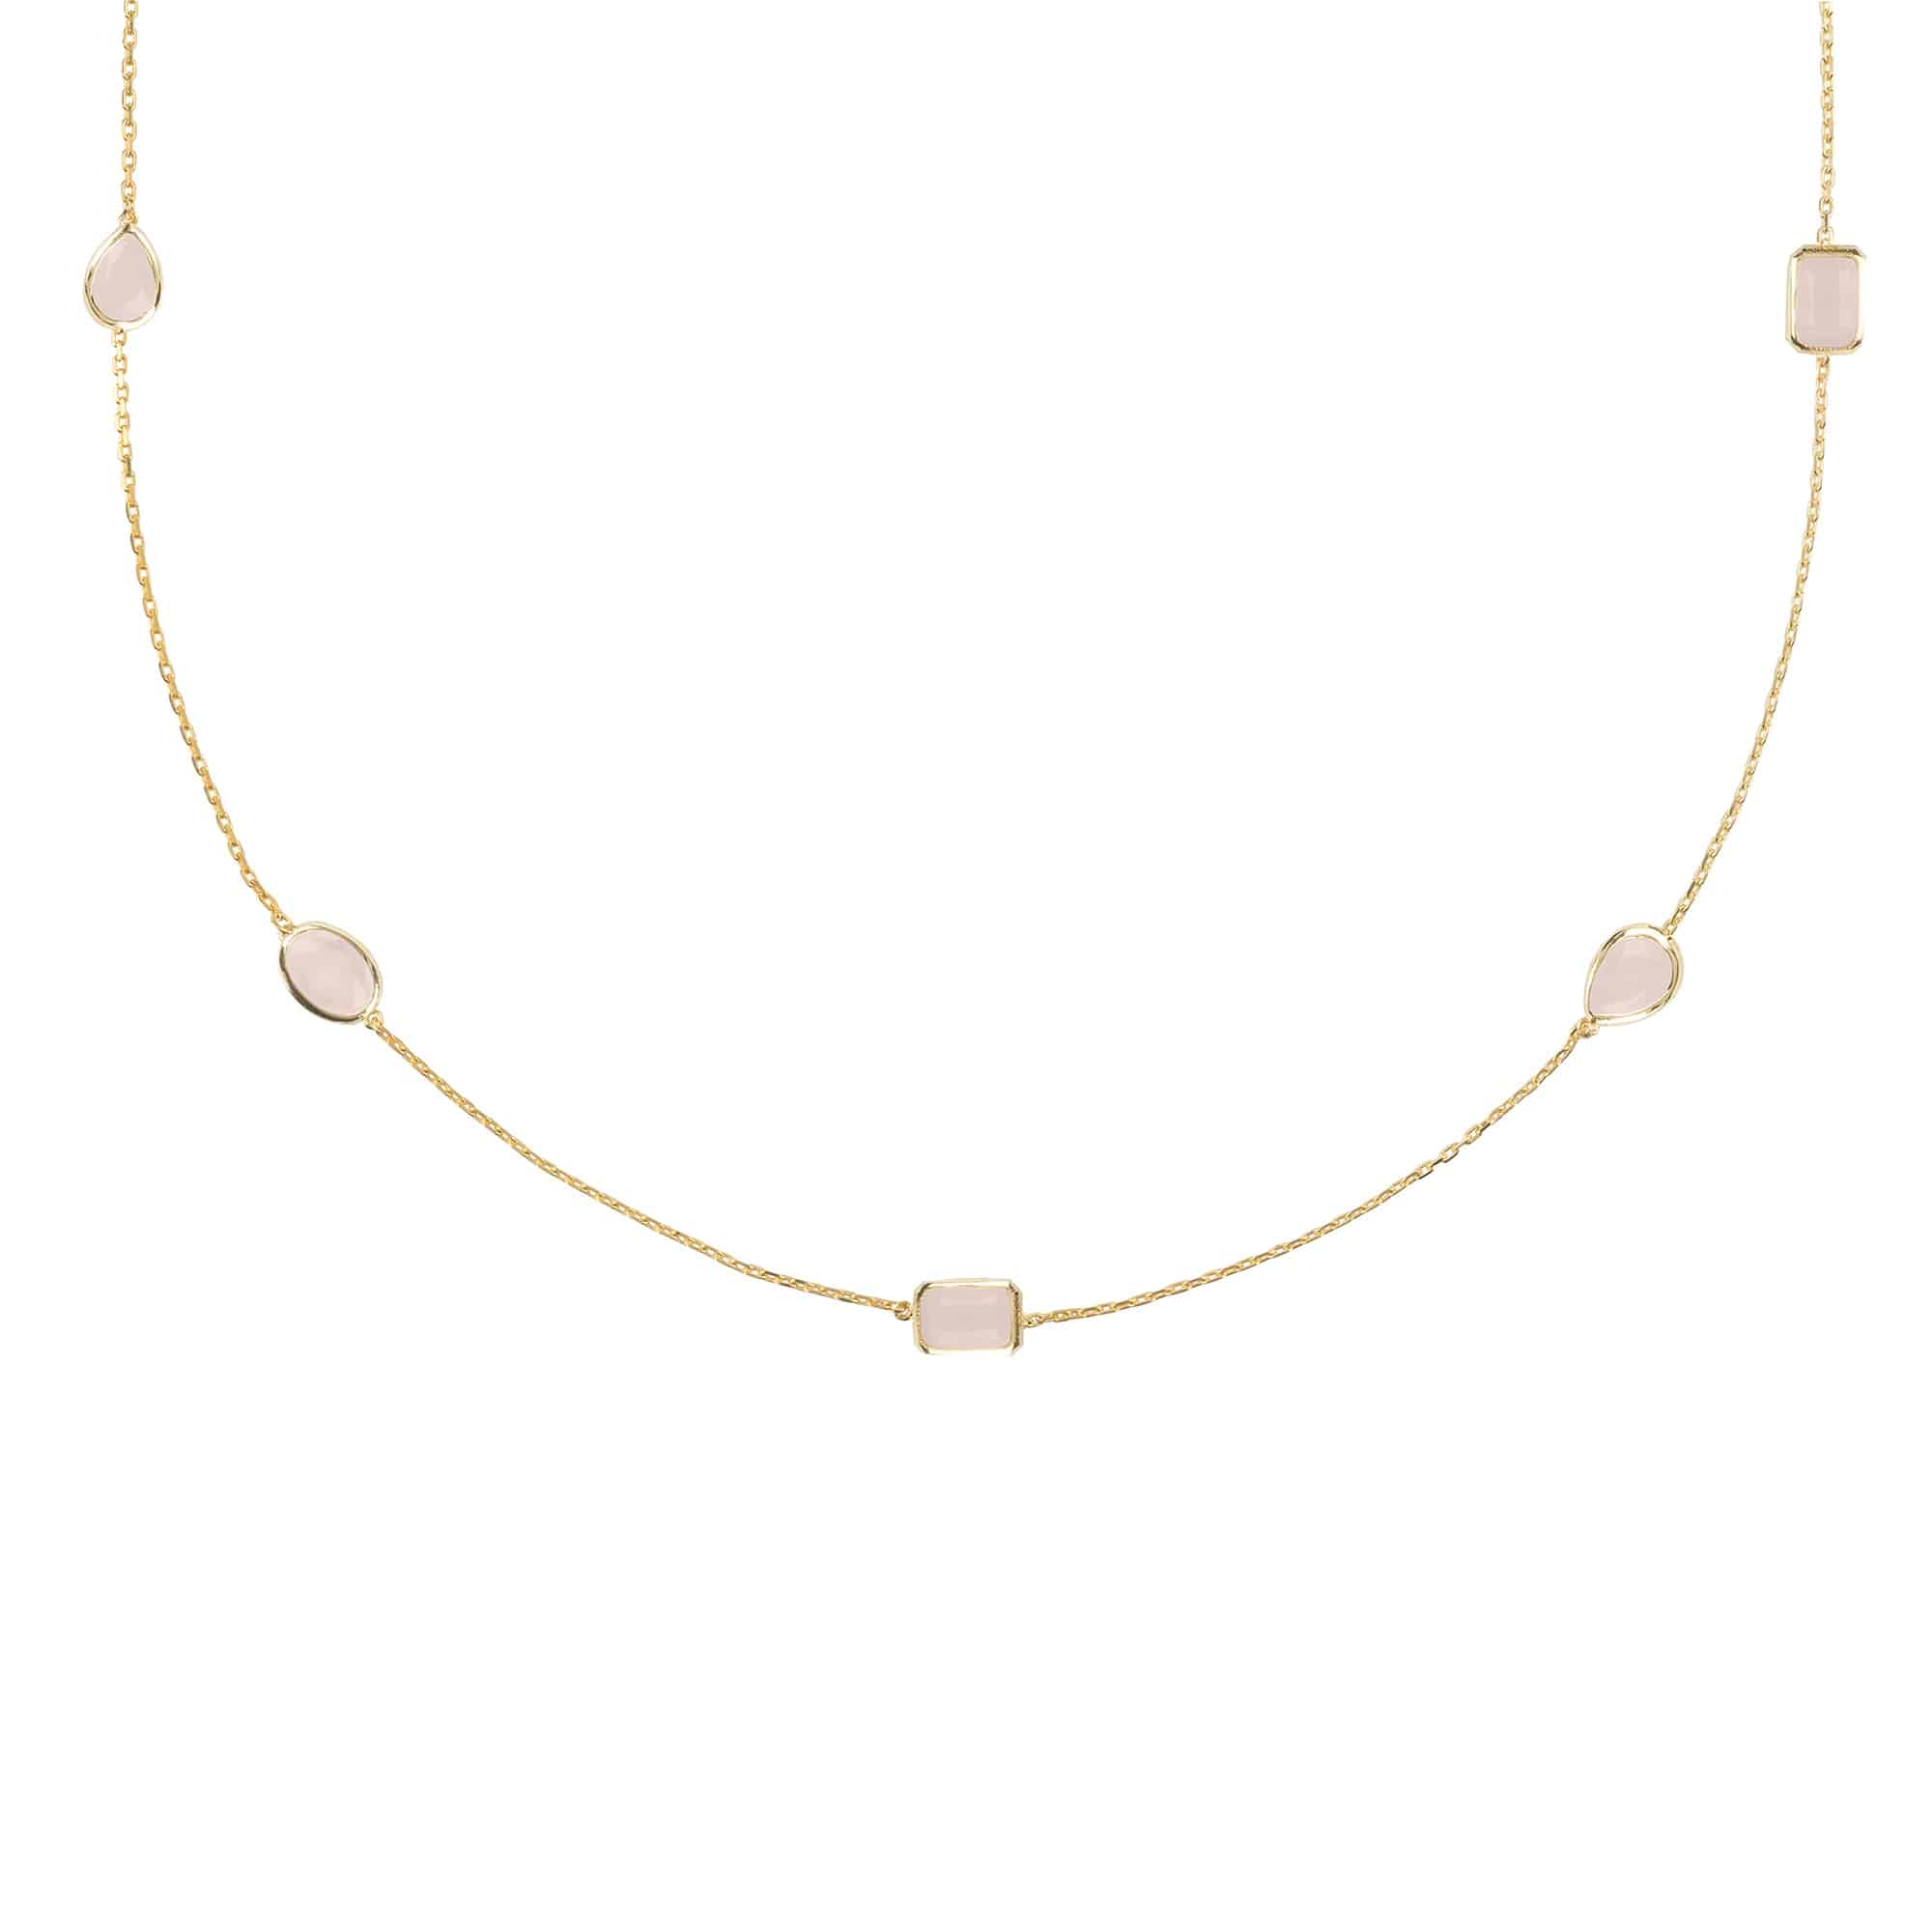 Venice 120Cm Long Chain Necklace Gold Rose Quartz - LATELITA Necklaces